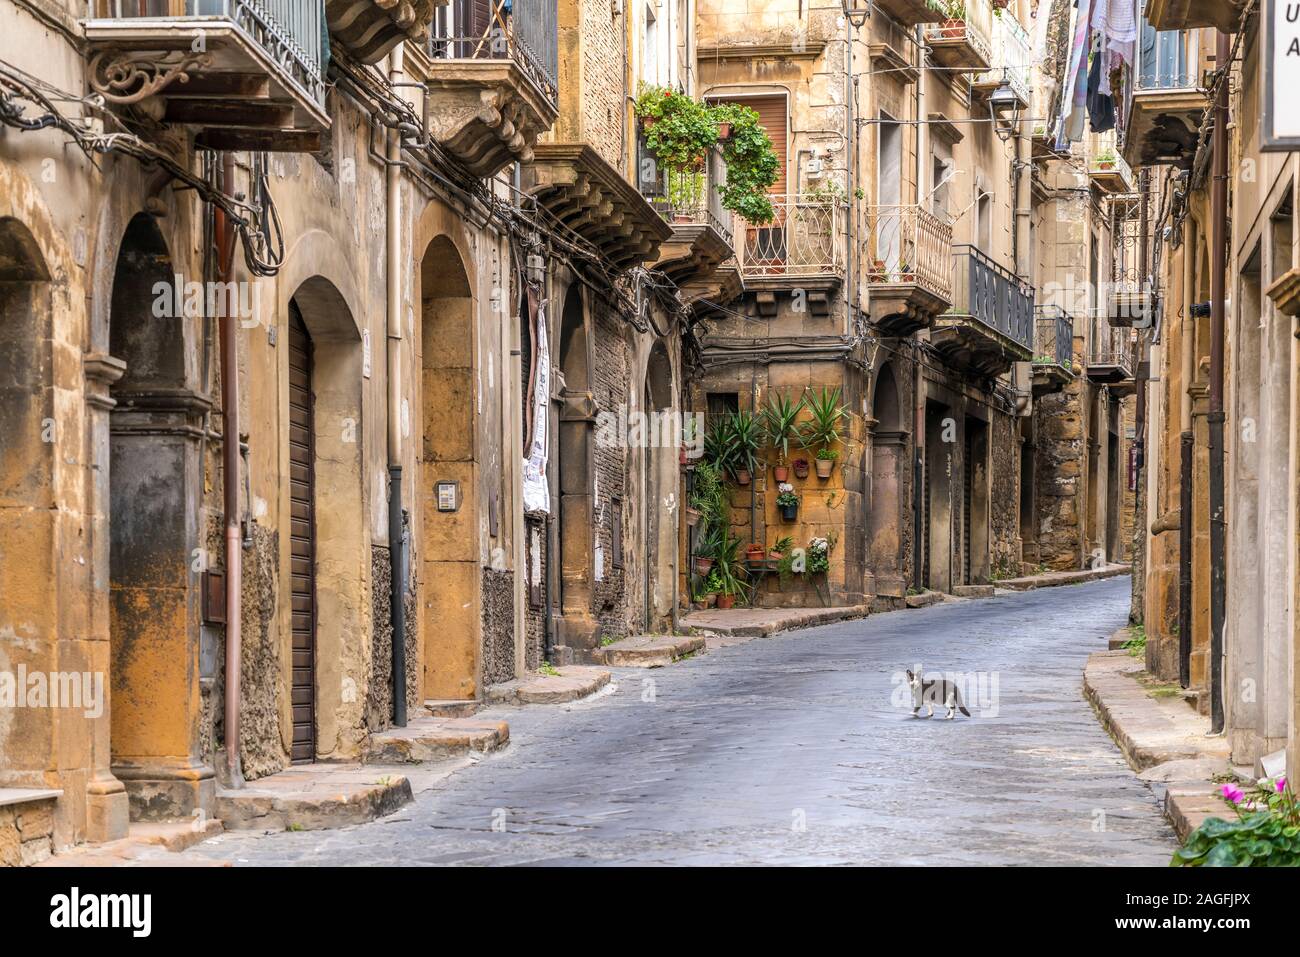 Katze auf der Straße in der historischen Altstadt von Modica, Sizilien, Italien, Europa | Katze auf die Straße, in der sich das historische Zentrum, Piazza Stockfoto